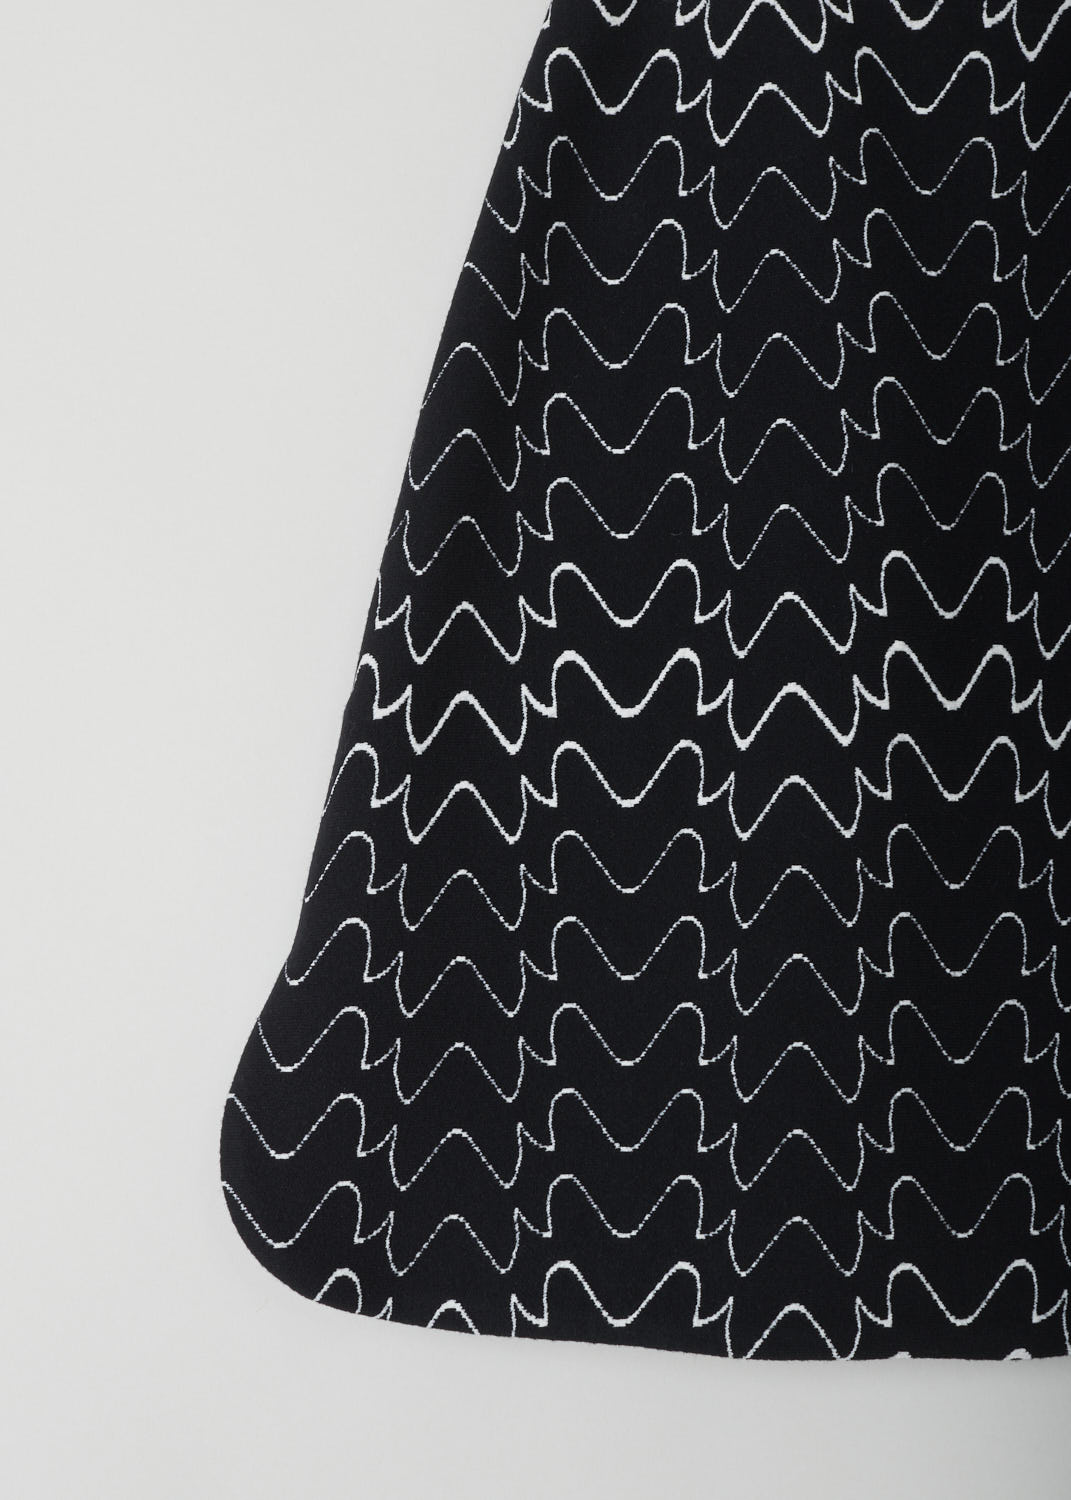 ALAÃA, BLACK AND WHITE PRINT MINI SKIRT, 9H9JE51SM516_C991_FILIGRANE, Black, Print, Detail, Beautiful, sturdy mini skirt with a fun zigzag line pattern. The skirt has  slits on either side with rounded slits. 
